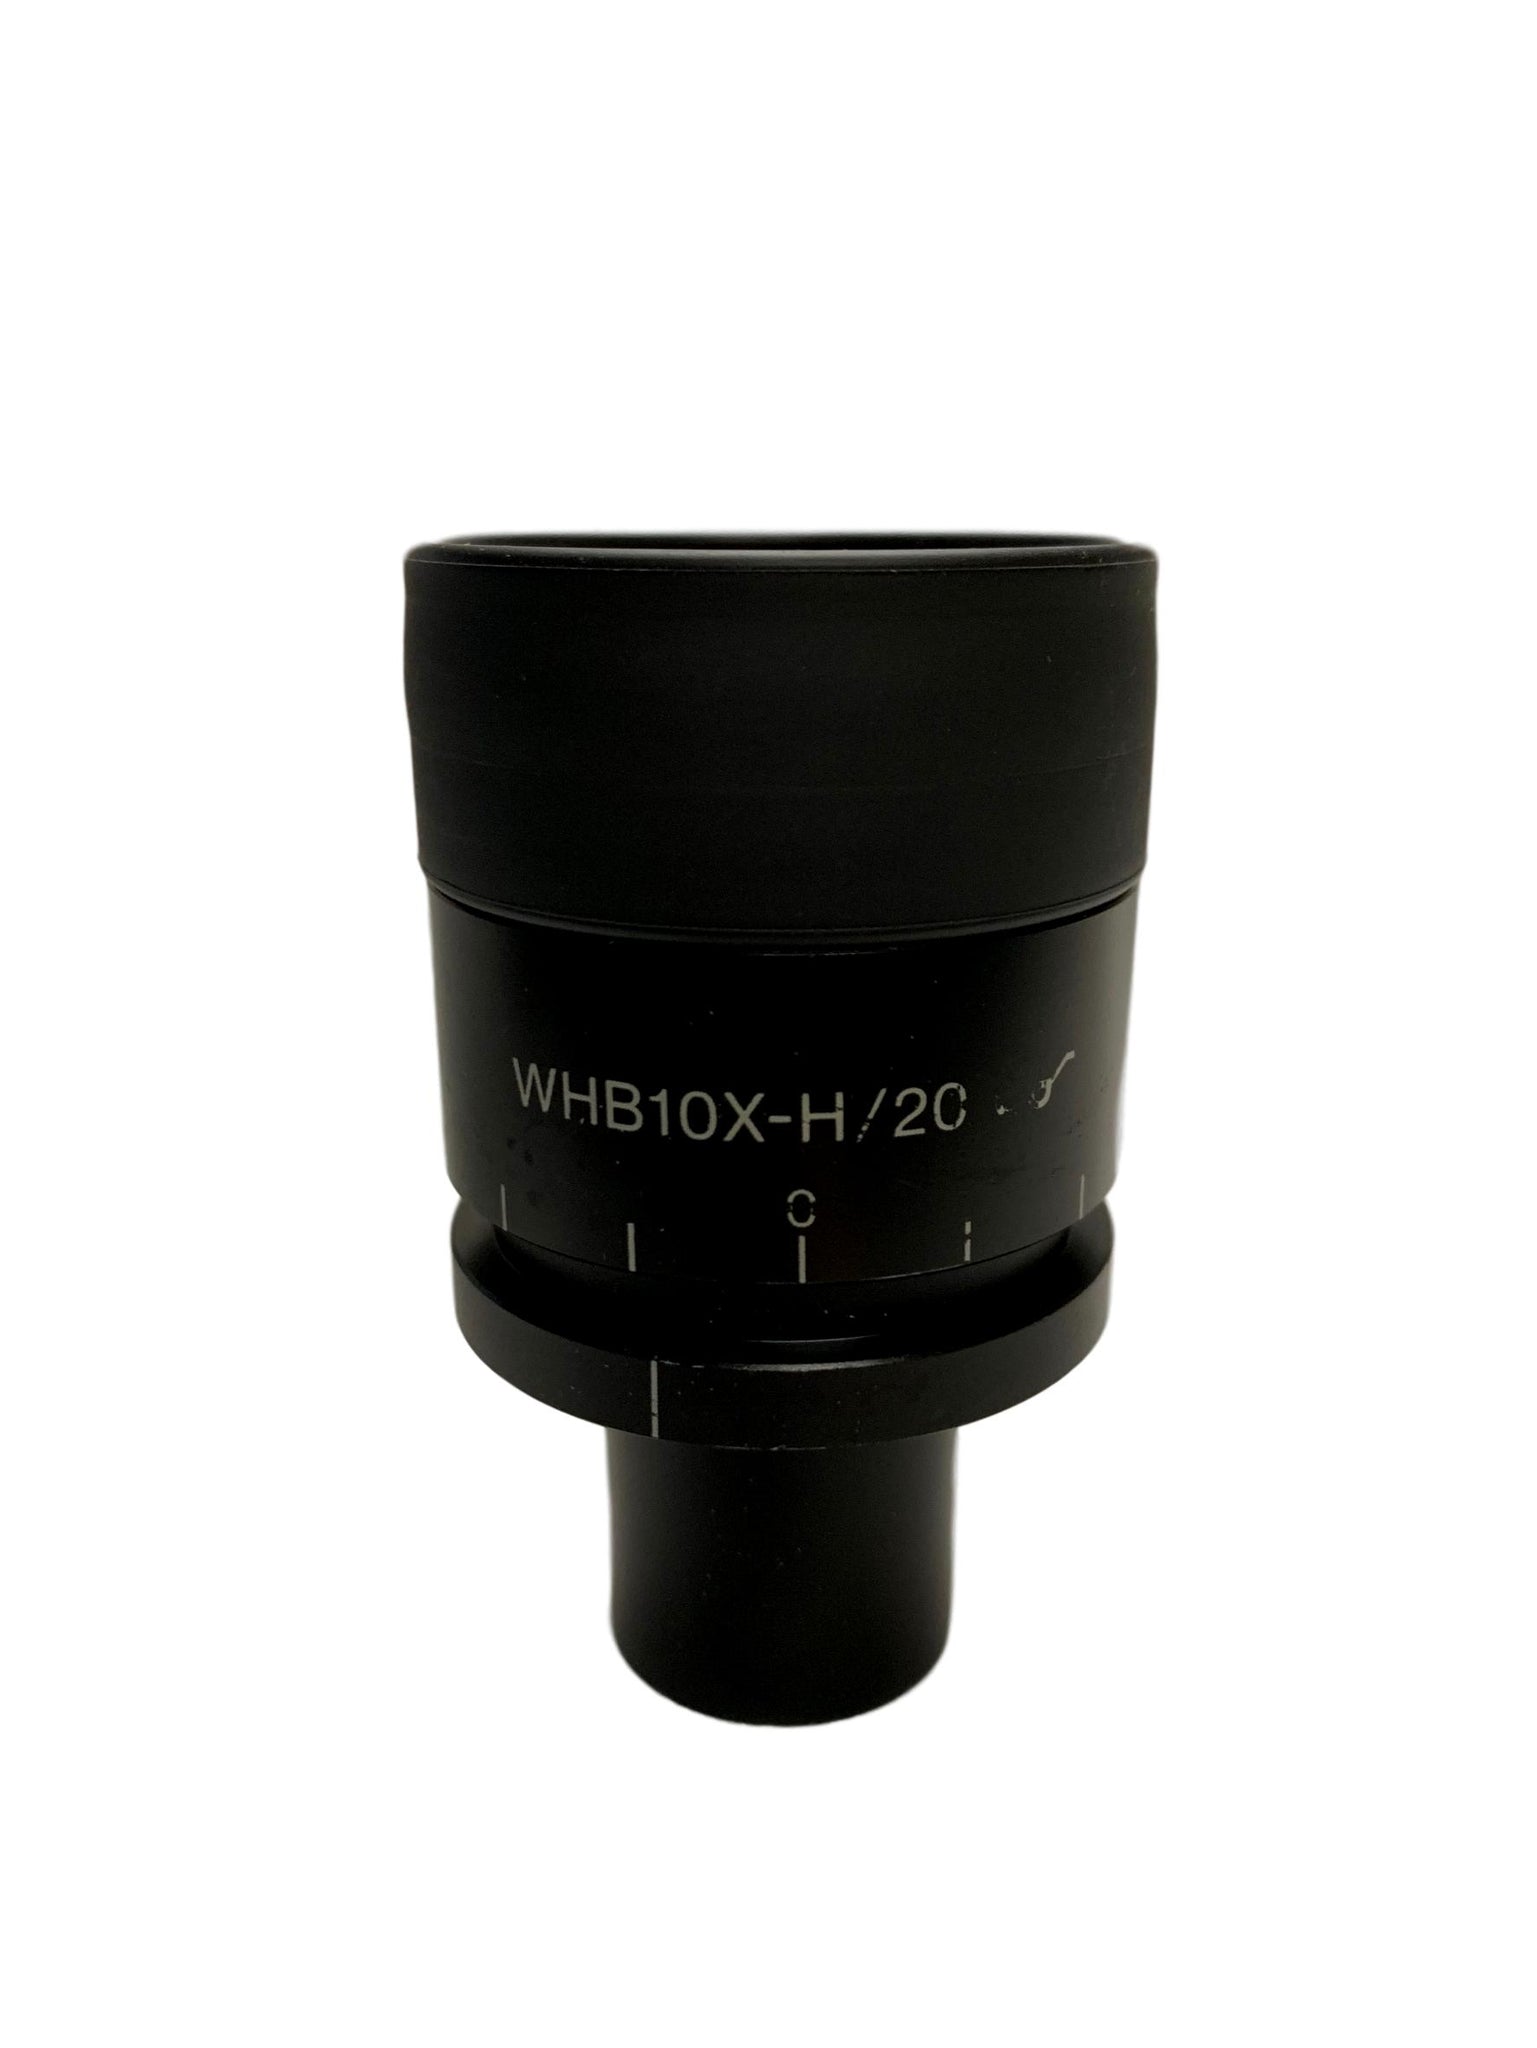 Olympus WHB 10x-H/20 Microscope Focusing Eyepiece